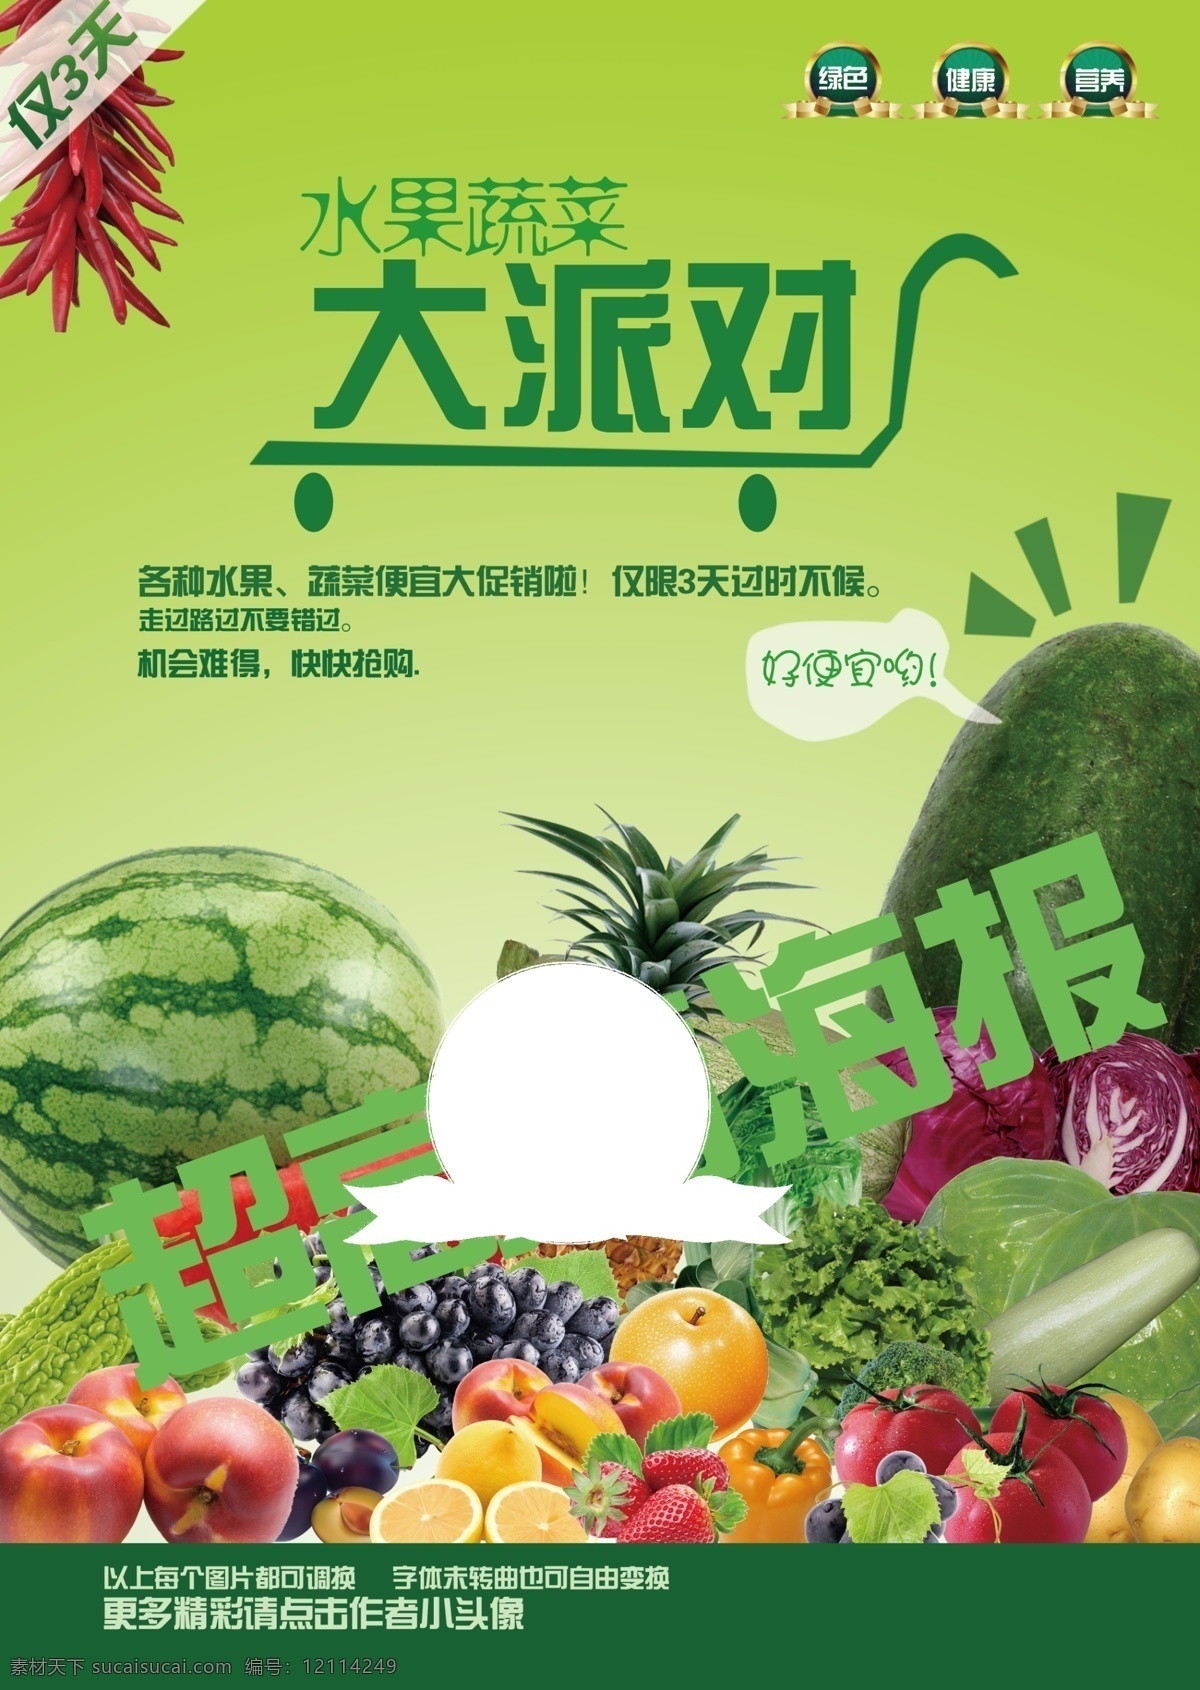 蔬菜 水果 蔬菜水果海报 即时贴 超高清海报 超市海报 eva 写真 水果派对 蔬菜派对 市场海报 蔬菜水果写真 海报类